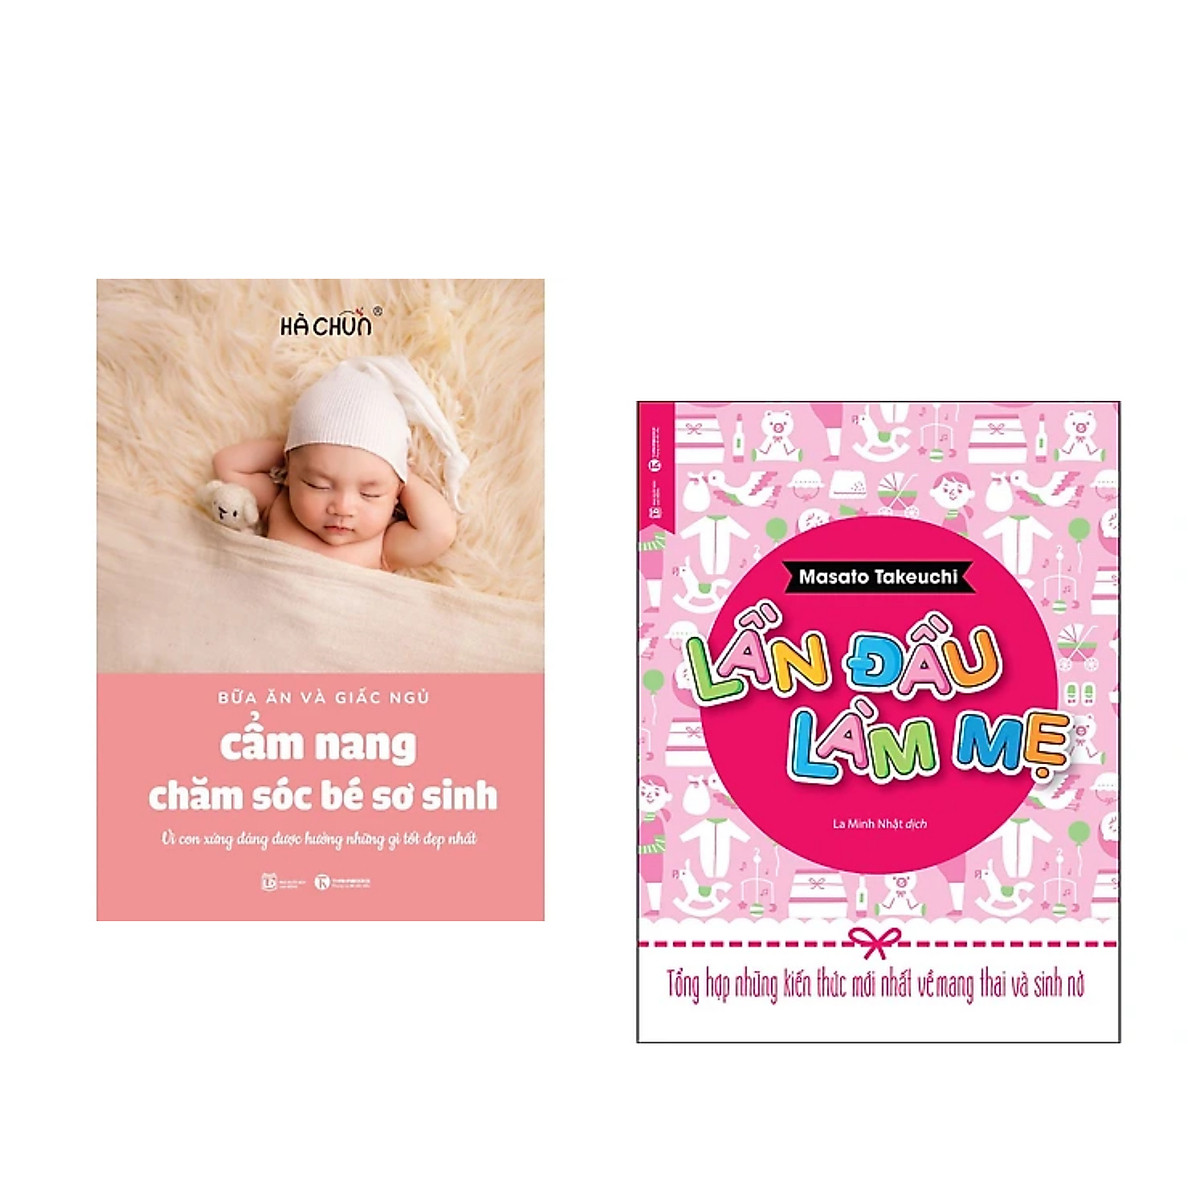 Combo sách dành cho cha mẹ:  Cẩm Nang Chăm Sóc Bé Sơ Sinh (Bữa Ăn Và Giấc Ngủ)+Lần Đầu Làm Mẹ - Tổng Hợp Những Kiến Thức Mới Nhất Về Mang Thai Và Sinh Nở (Tái Bản)+ Poster An Toàn Cho Con Yêu 